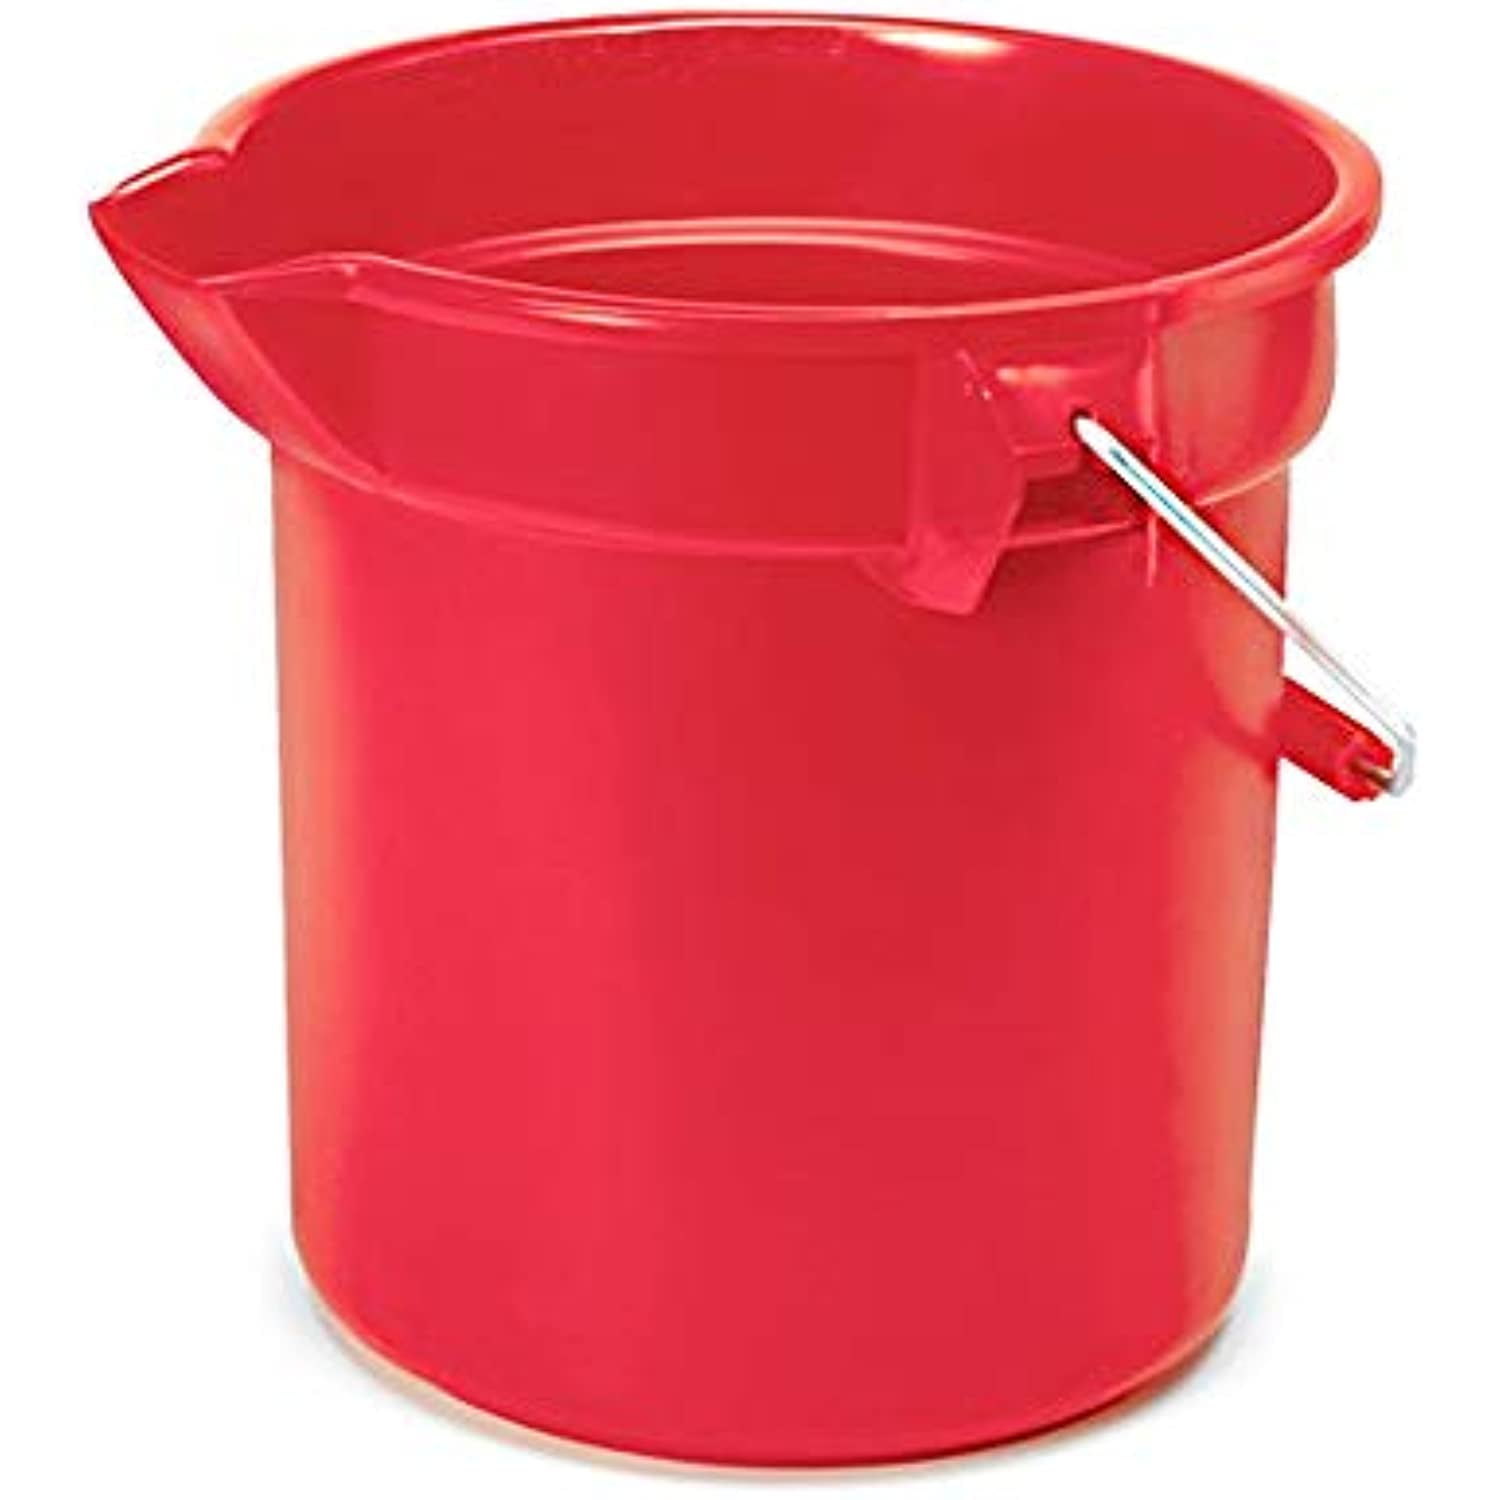 Bucket Red 5gal Round